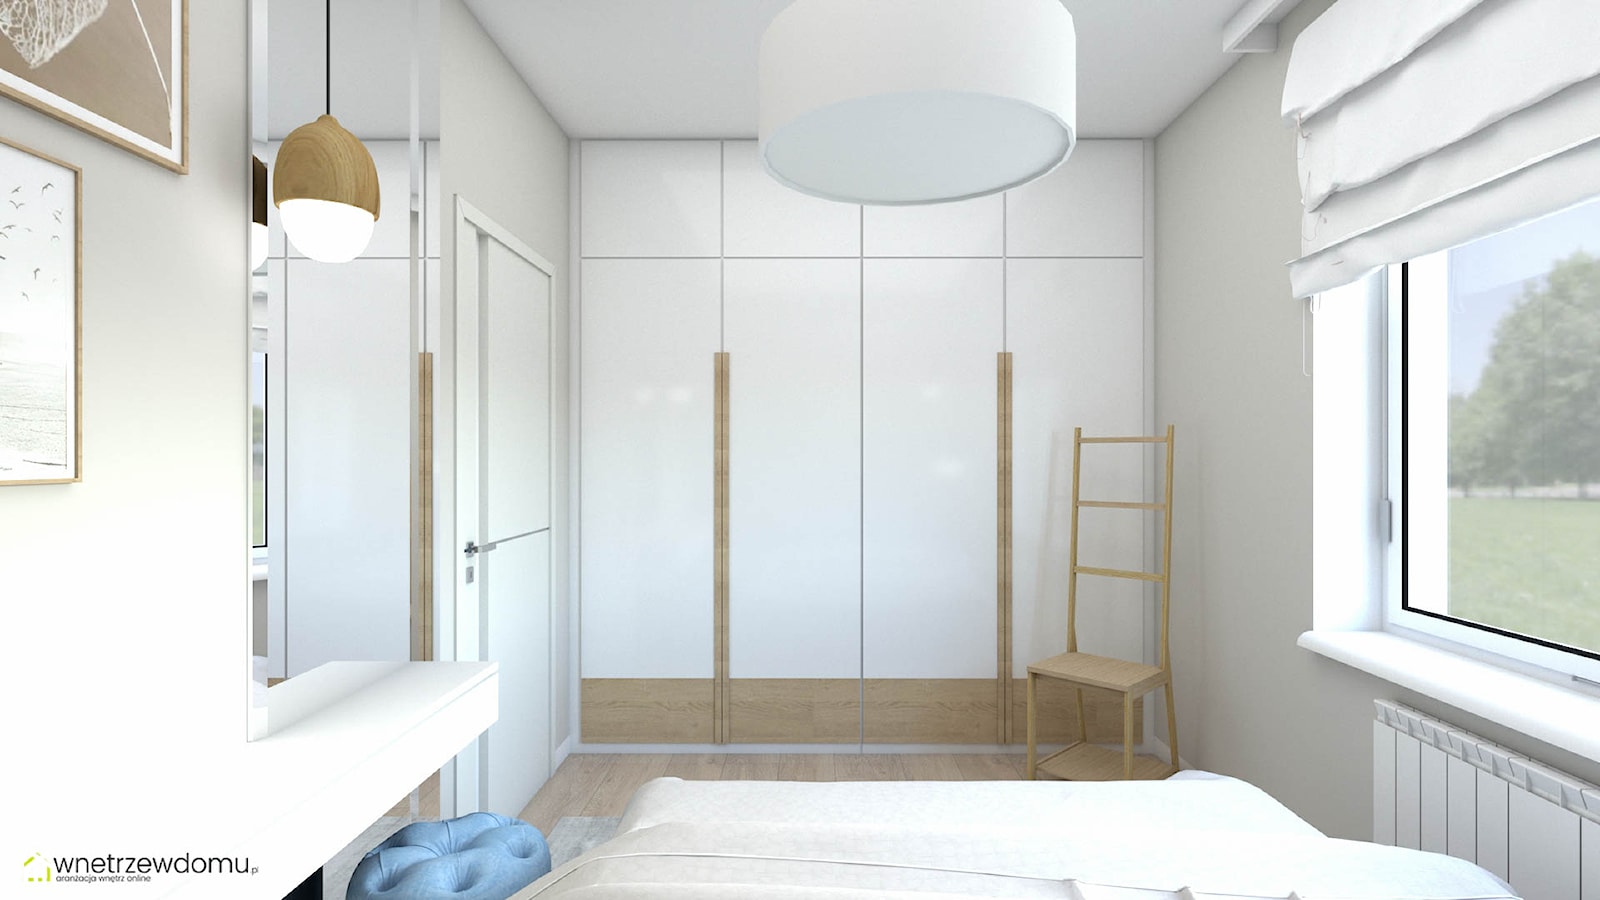 Hotelowa sypialnia z tapcerowaną ścianą - zdjęcie od wnetrzewdomu - Homebook